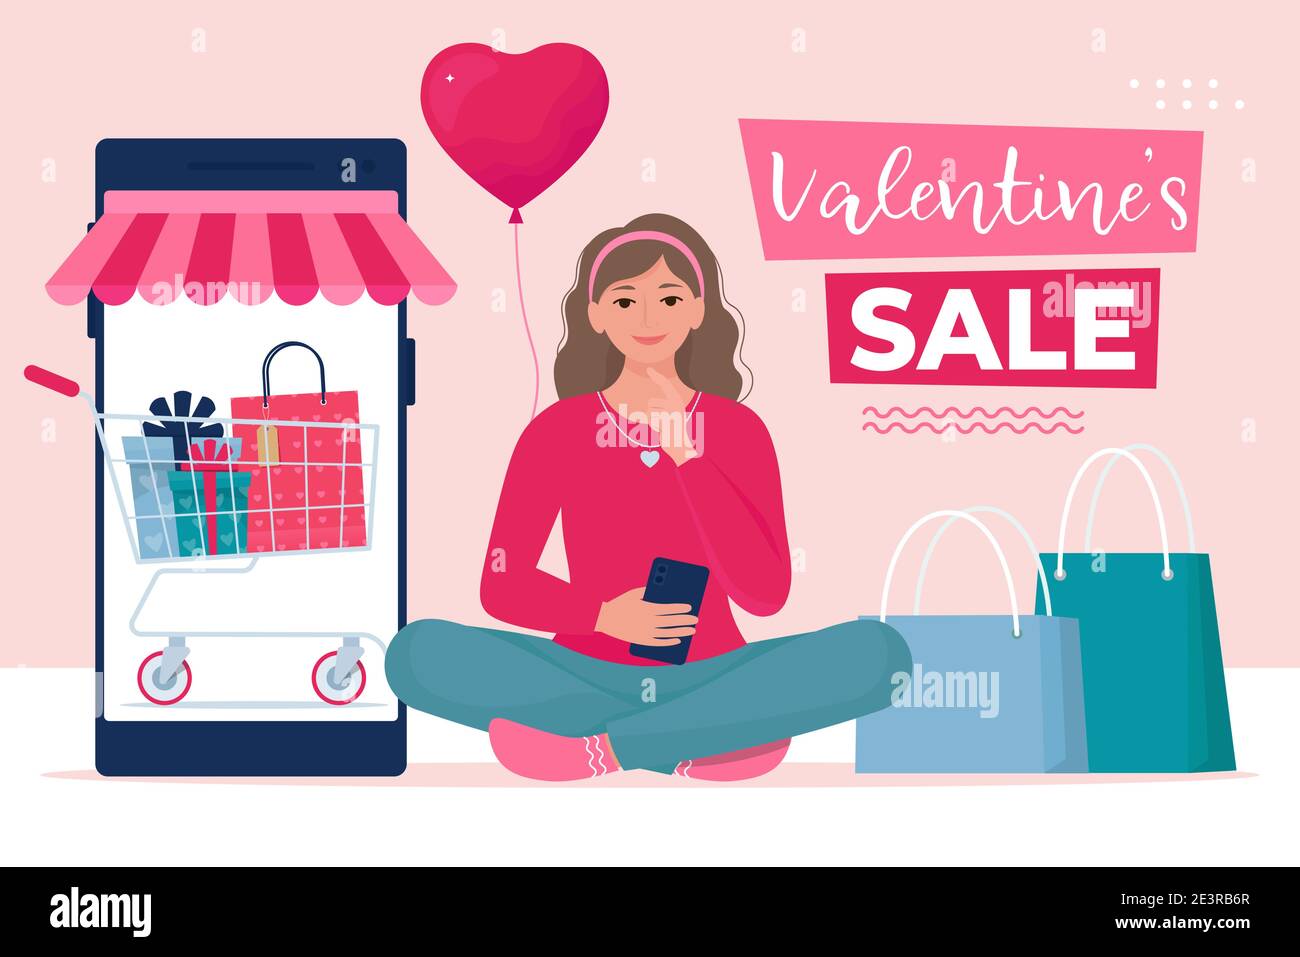 Chica está haciendo compras a través de smartphone. Valentine's Sale, concepto de compras en línea. Almacenar. Ilustración vectorial en estilo plano Ilustración del Vector